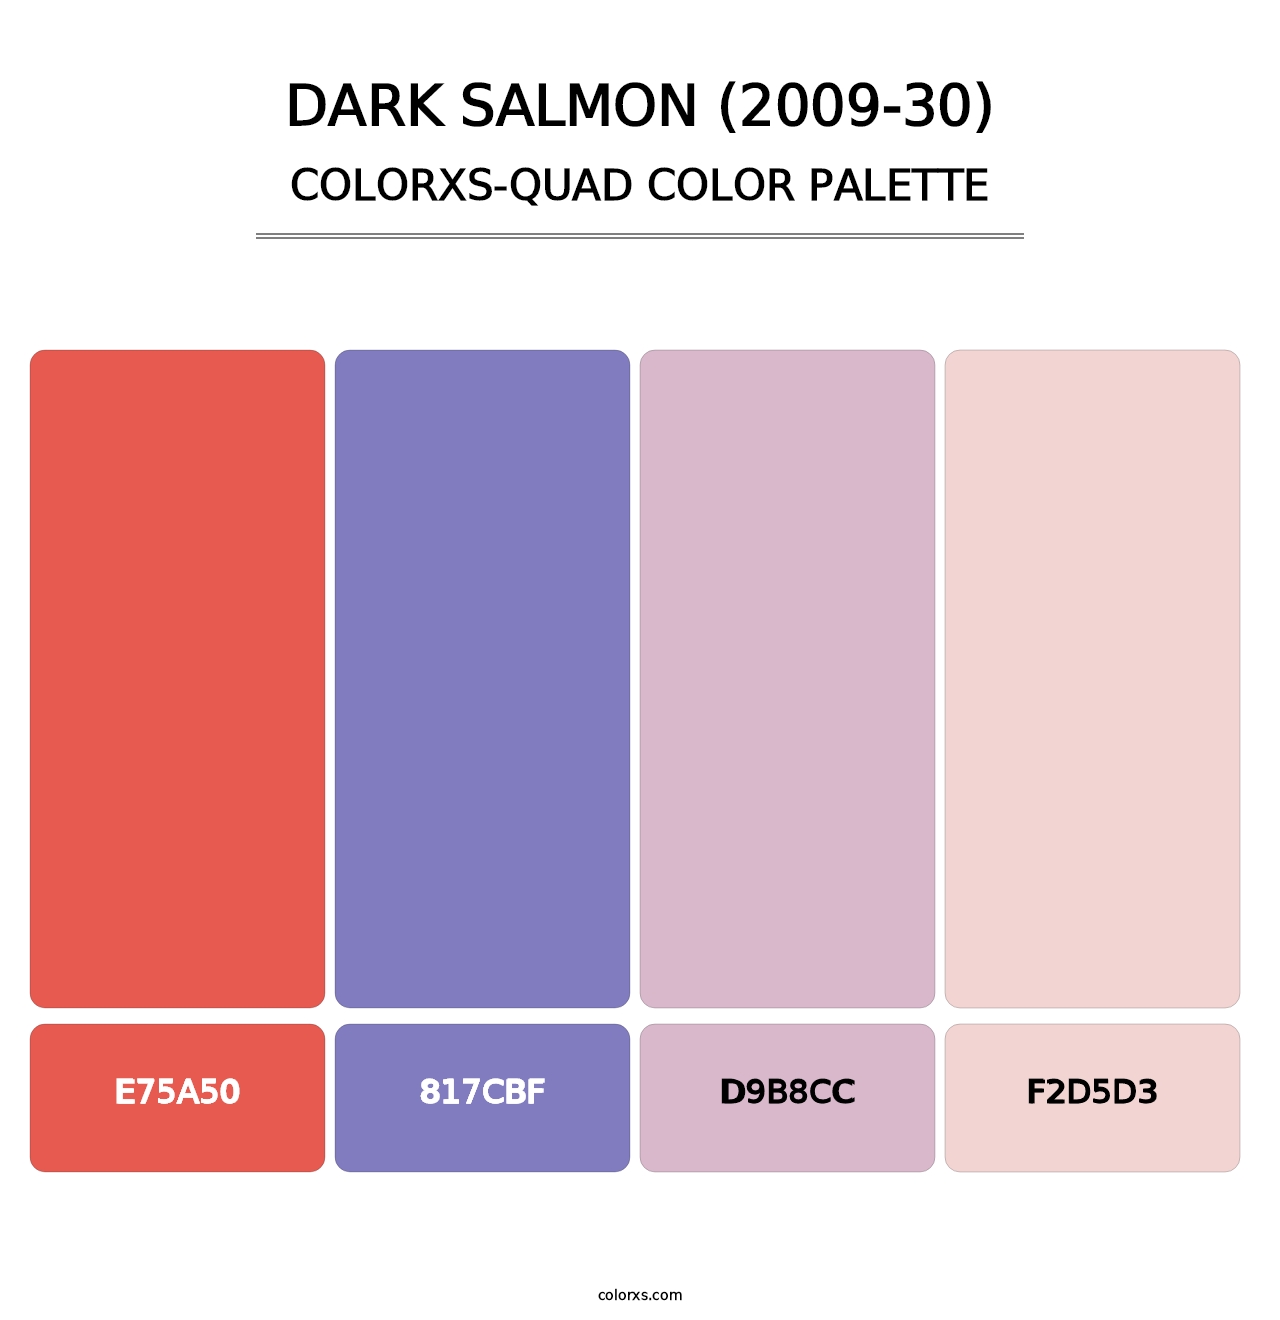 Dark Salmon (2009-30) - Colorxs Quad Palette